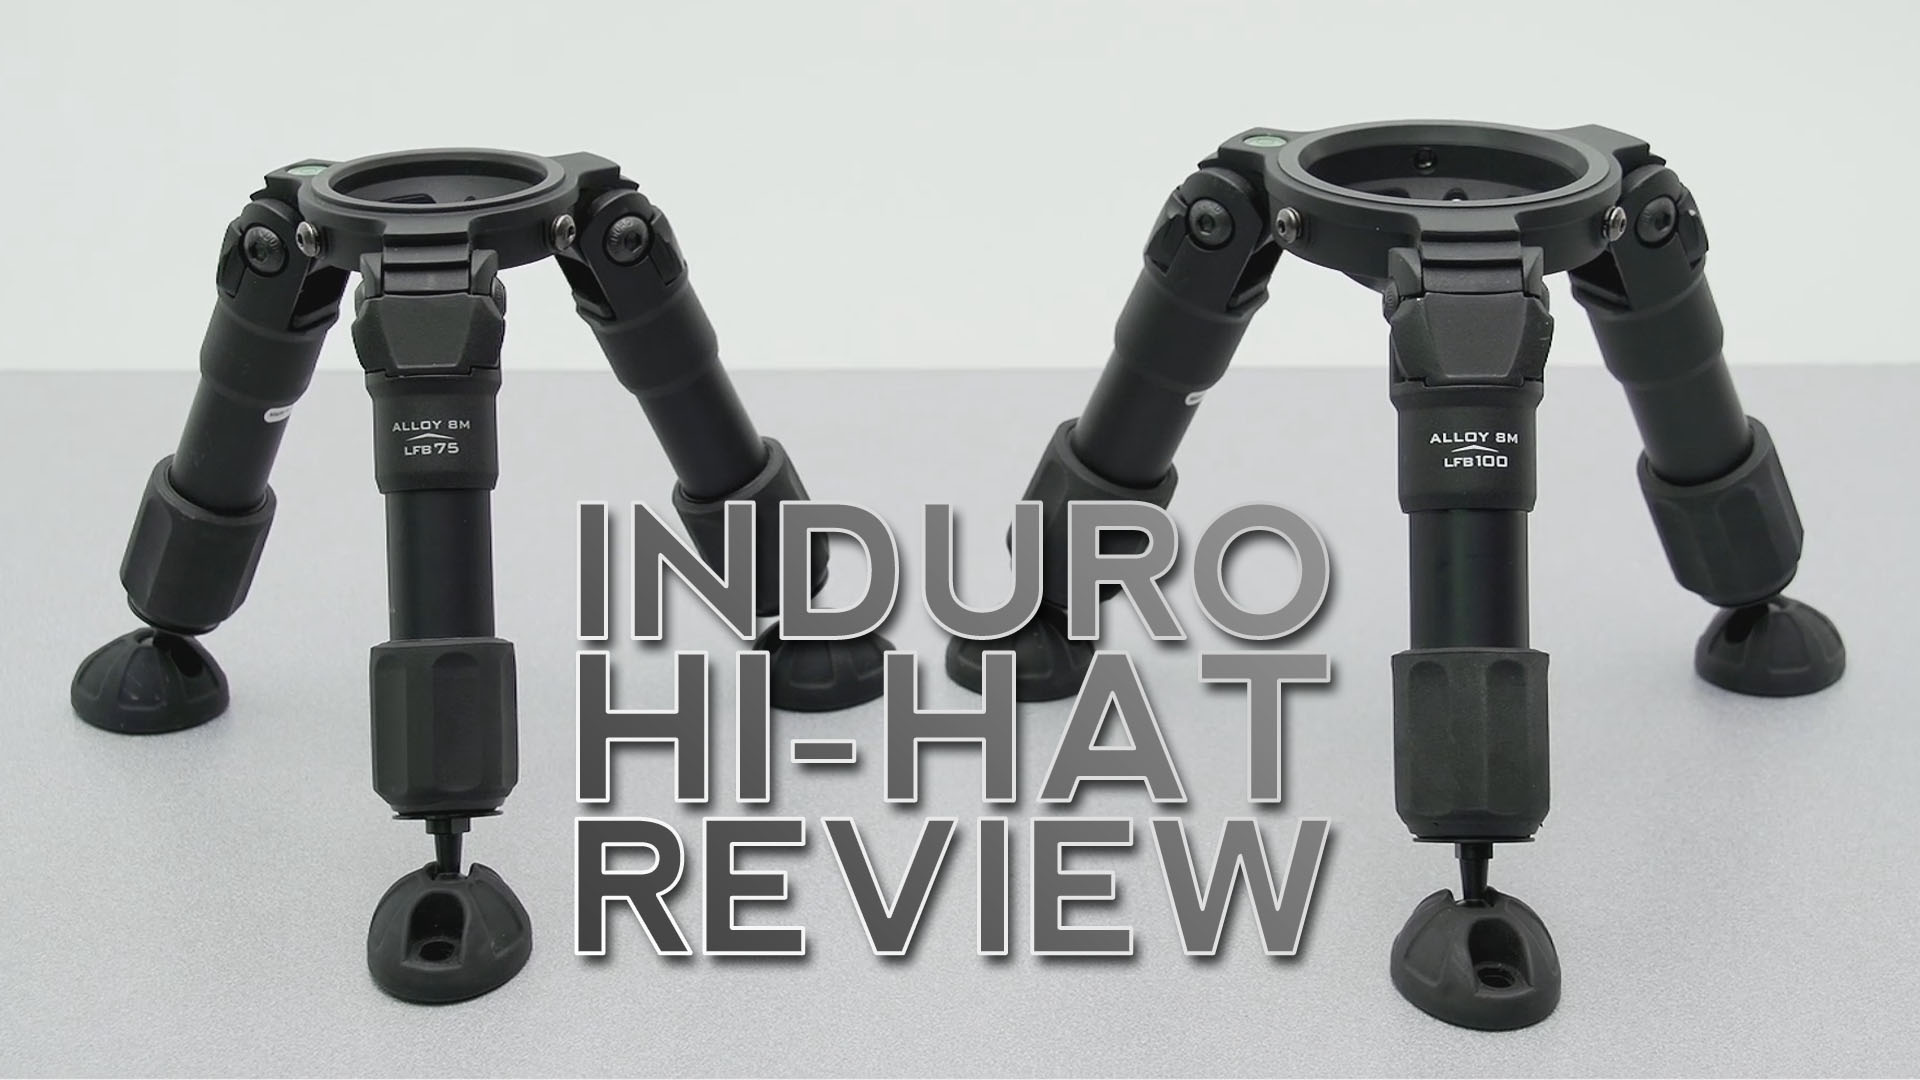 Gear Review: Induro Hi-Hat Tripod